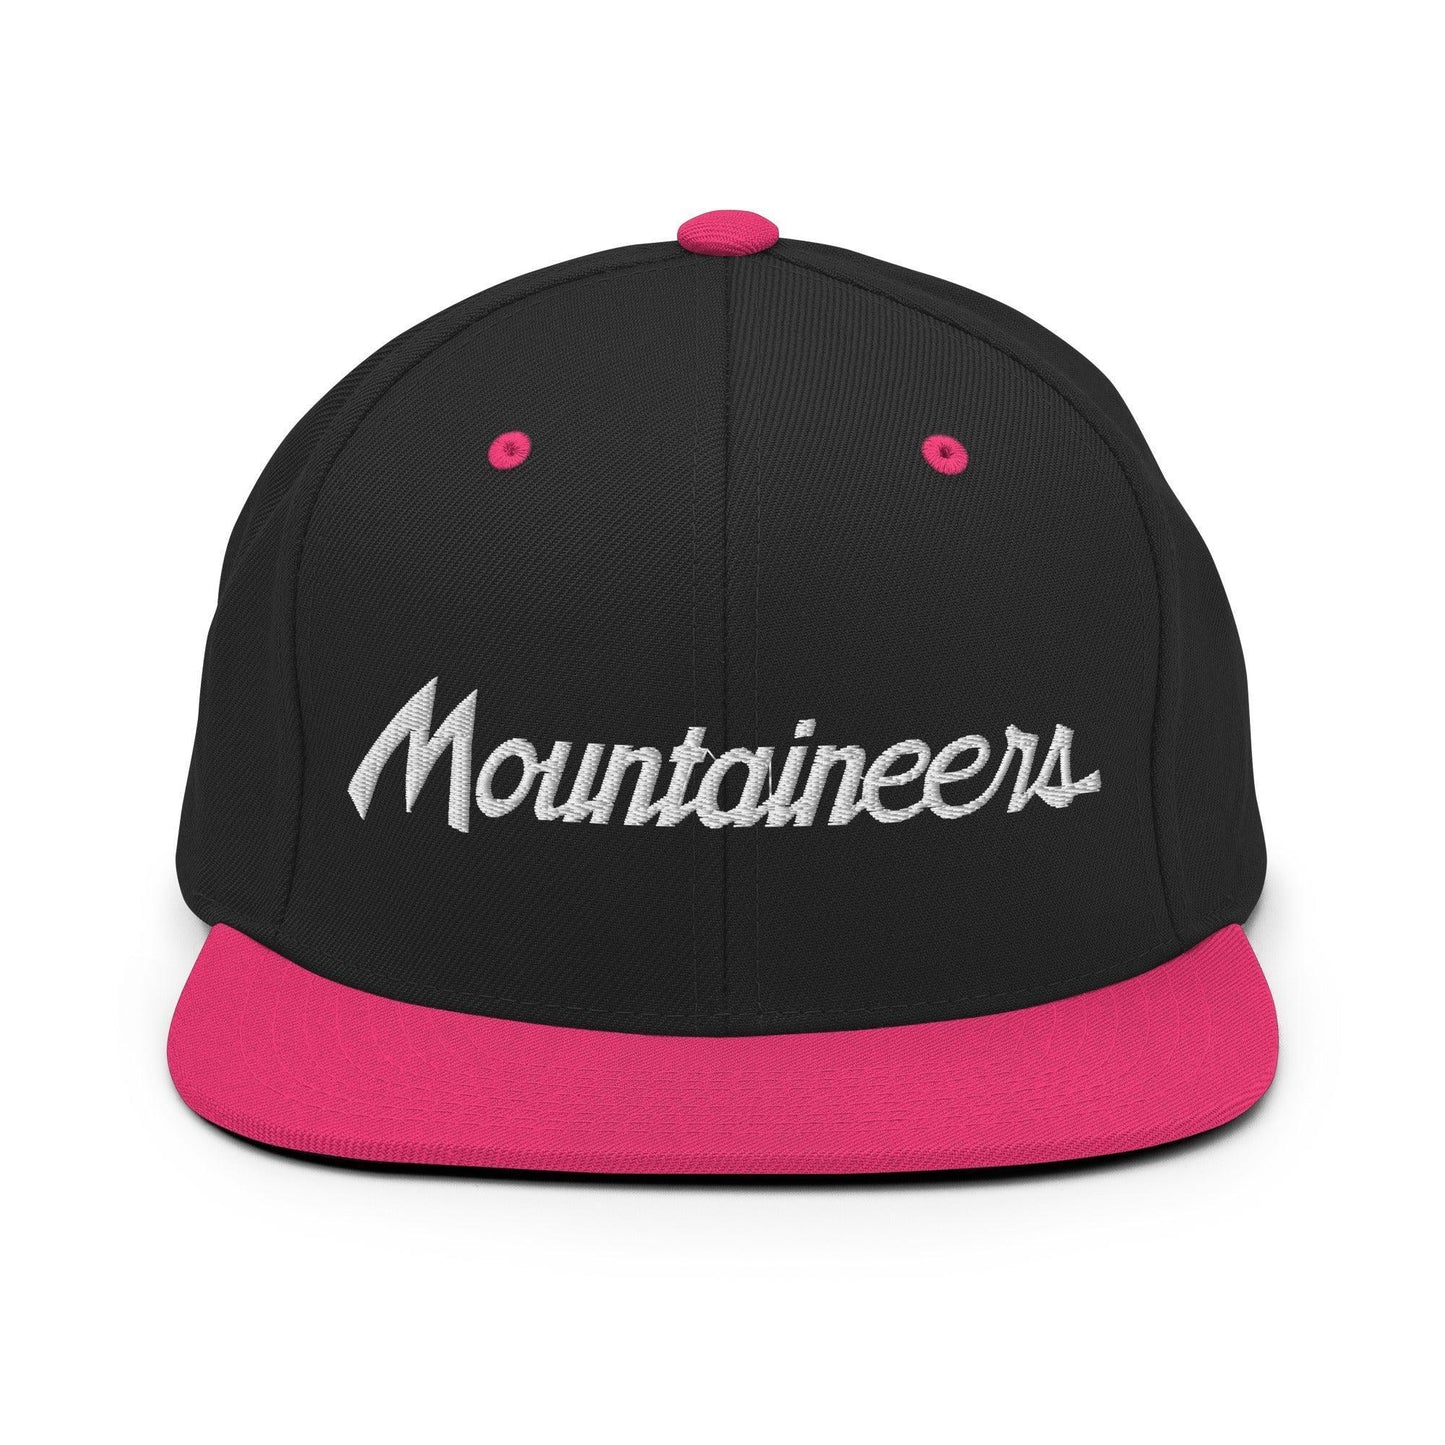 Mountaineers School Mascot Script Snapback Hat Black/ Neon Pink